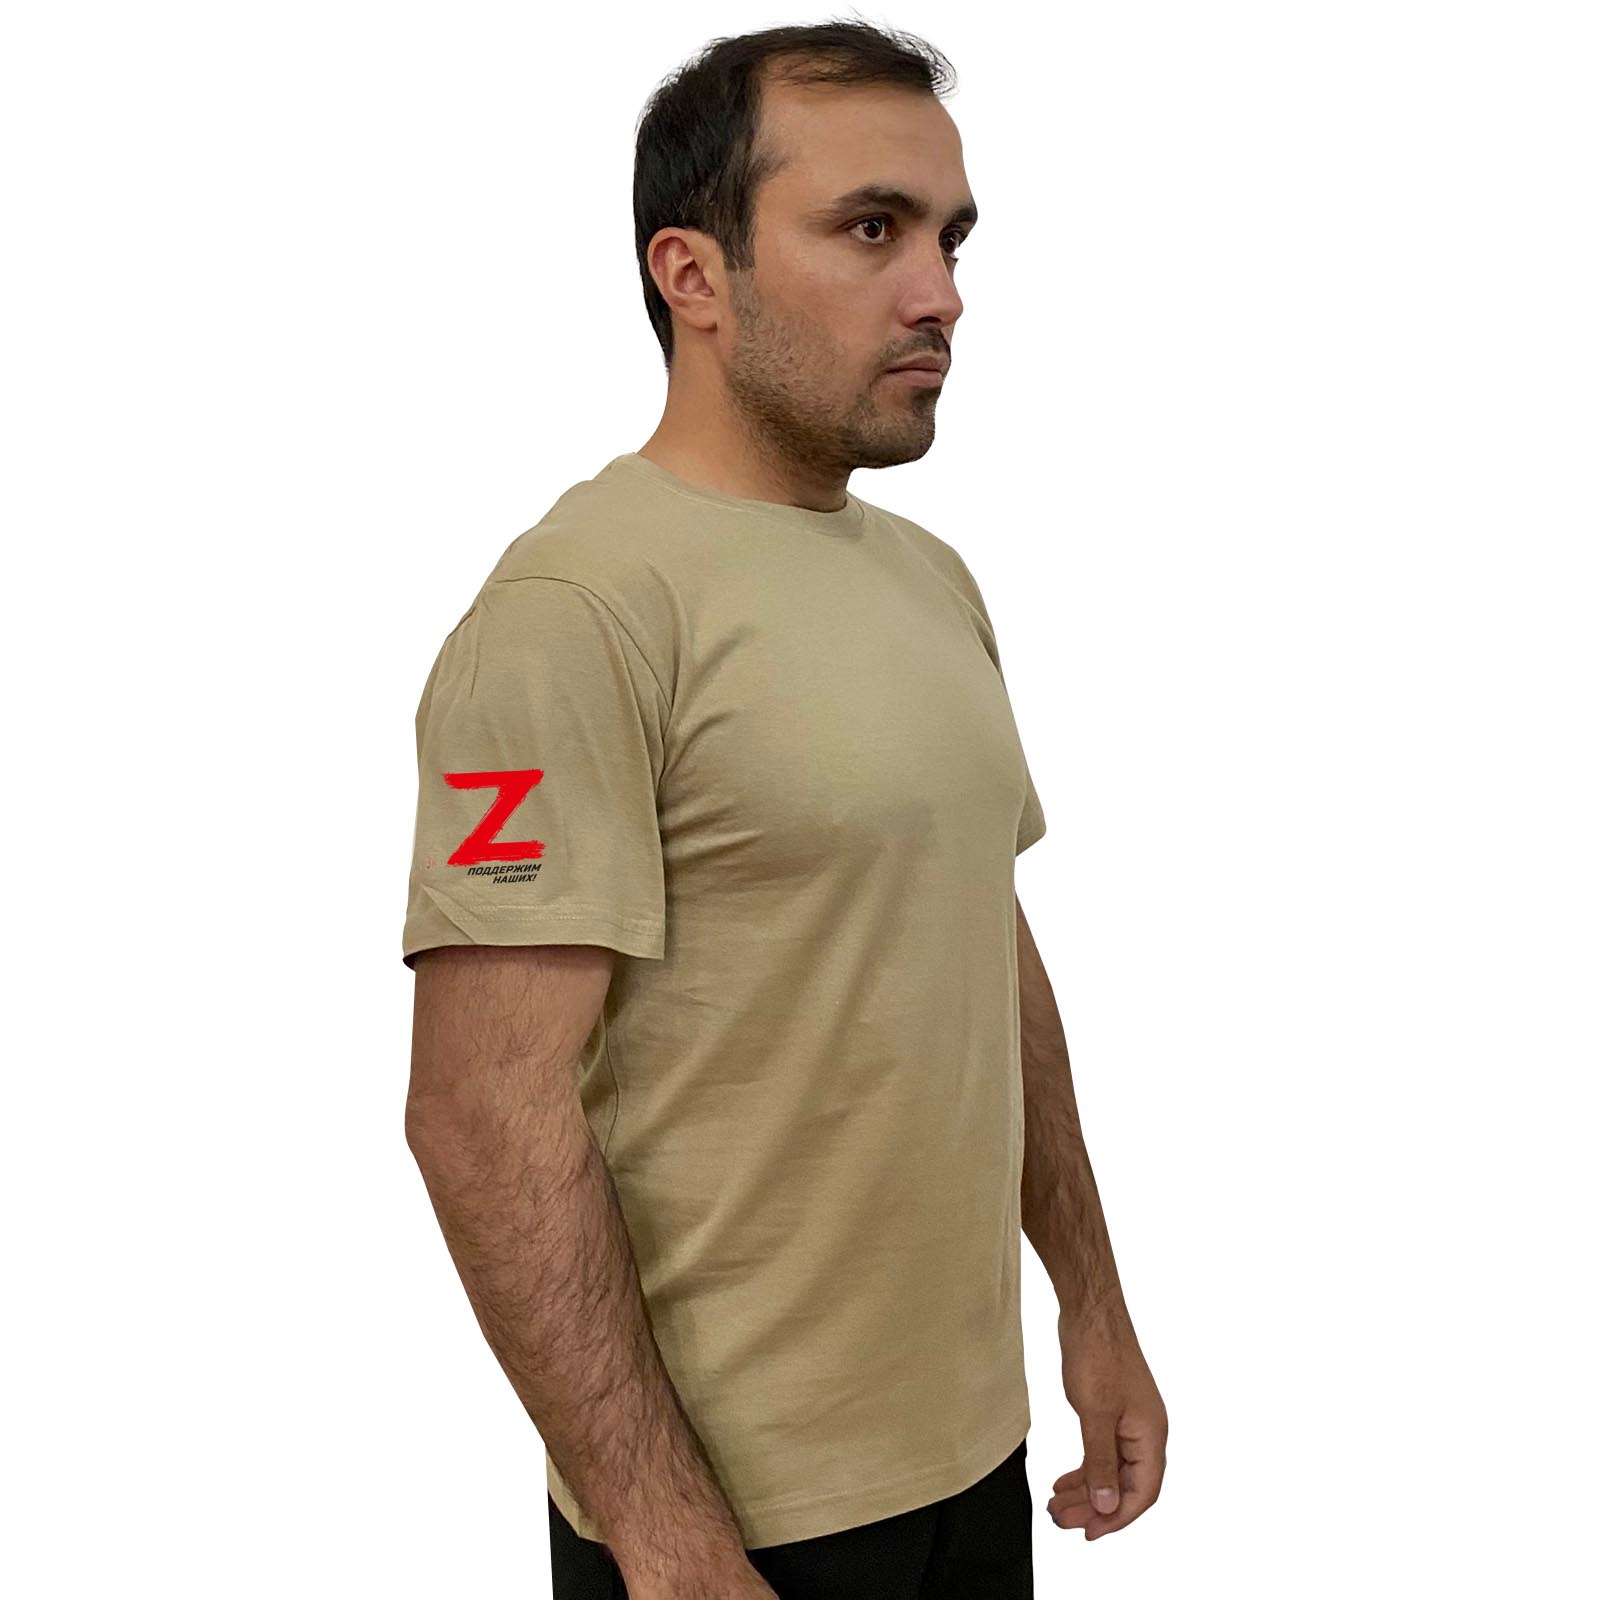 Купить надежную стильную футболку с литерой Z онлайн